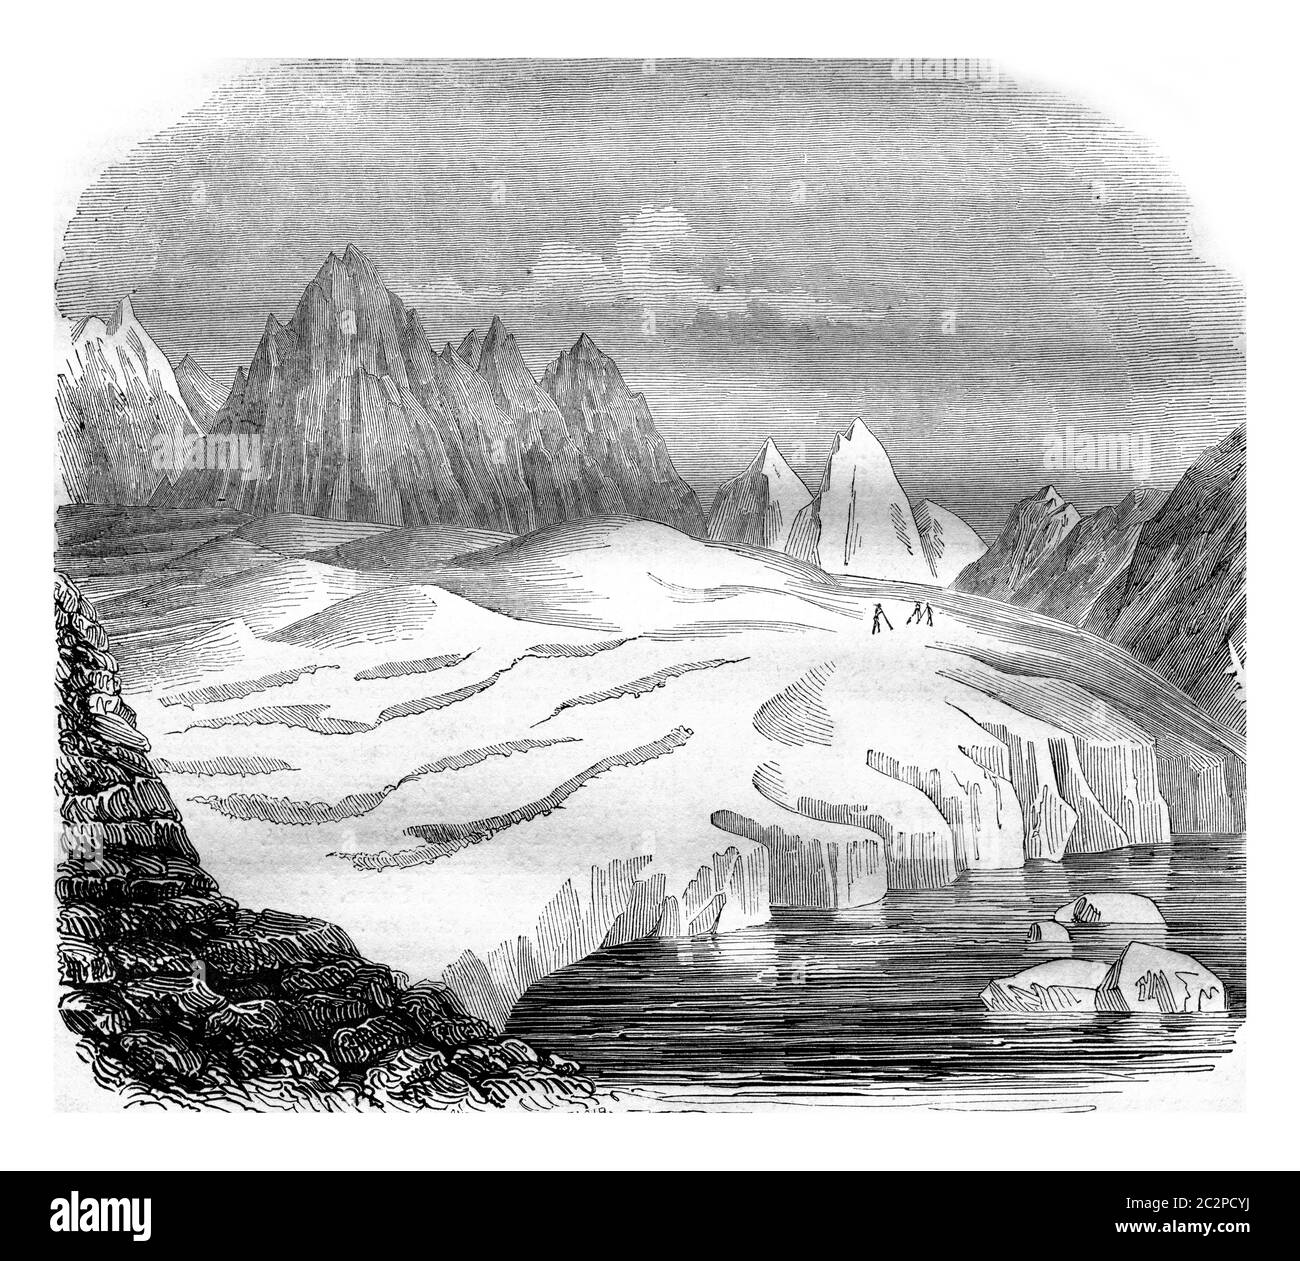 Il ghiacciaio dell'Aletsch, il lago Merrill, illustrazione d'epoca incisa. Magasin Pittoresque 1842. Foto Stock